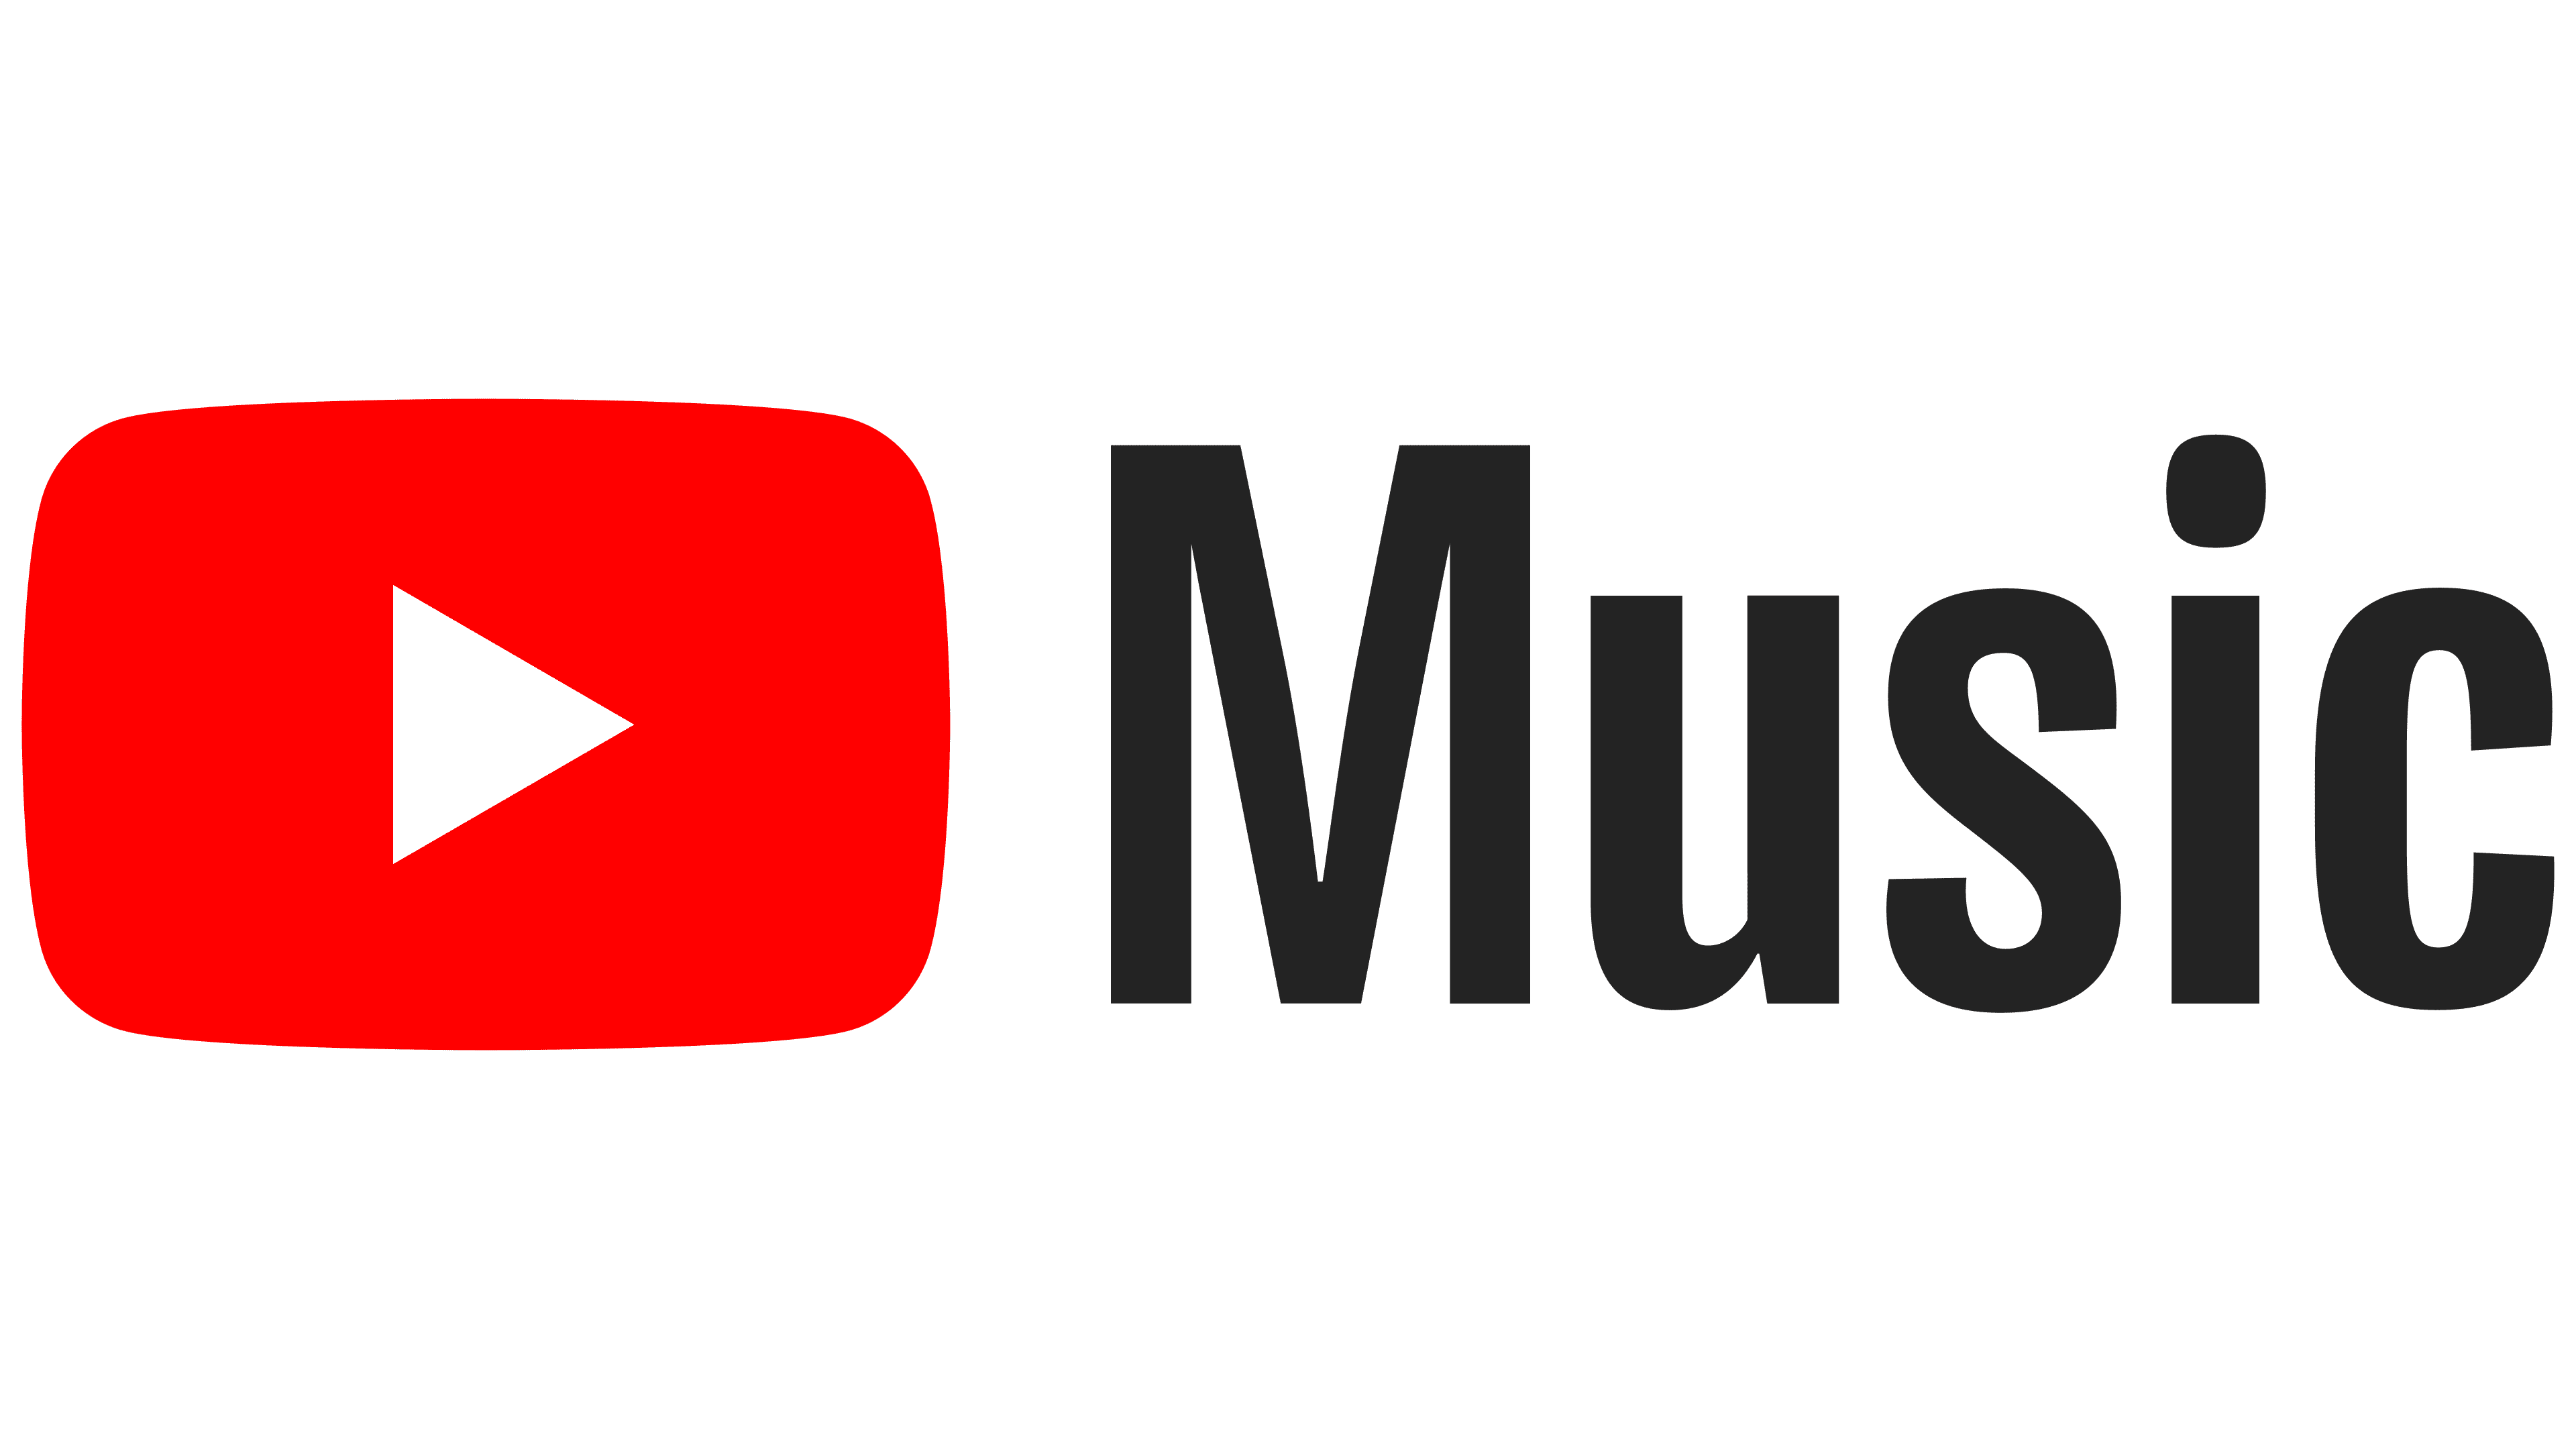 youtube font logo